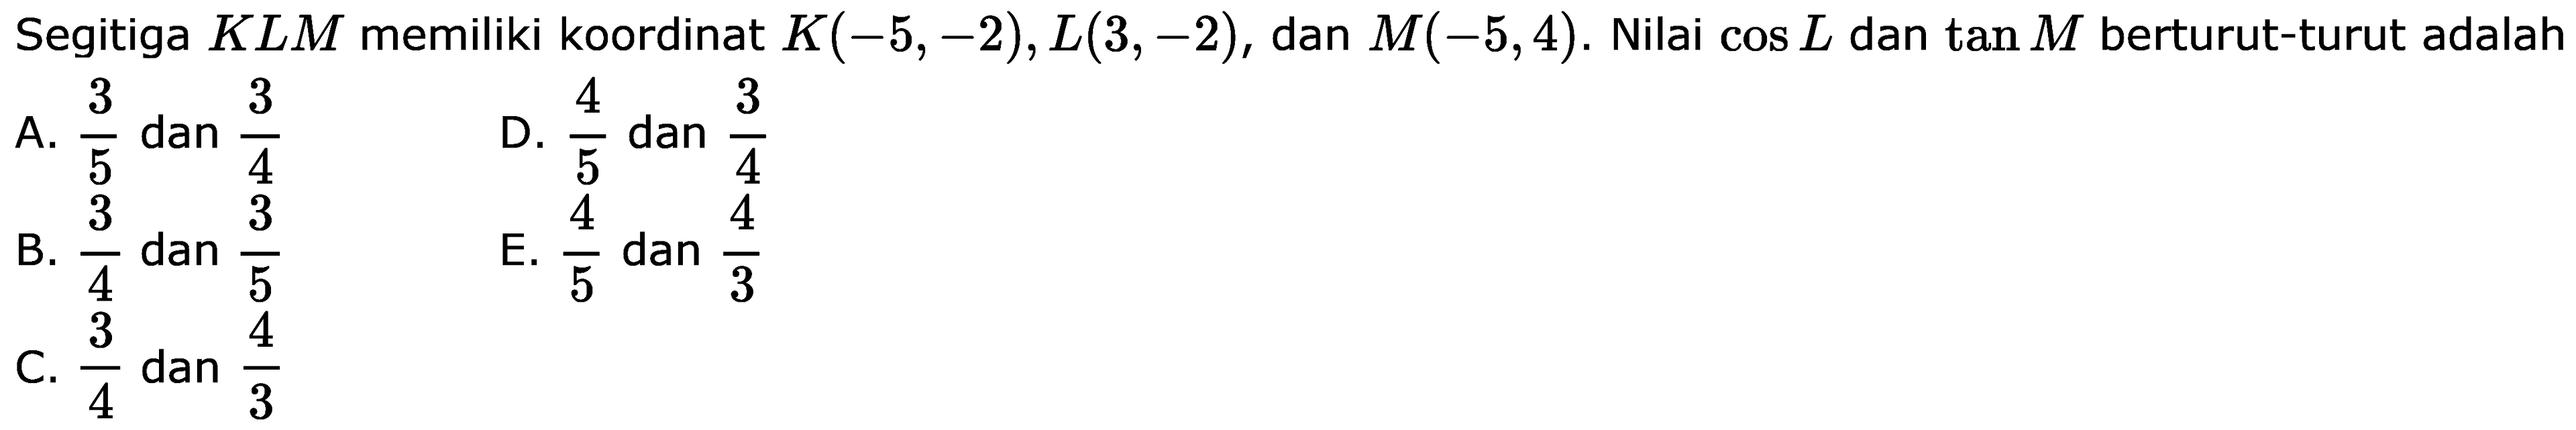 Segitiga KLM memiliki koordinat K(-5,-2), L(3,-2), dan M(-5,4). Nilai cos L dan tan M berturut-turut adalah